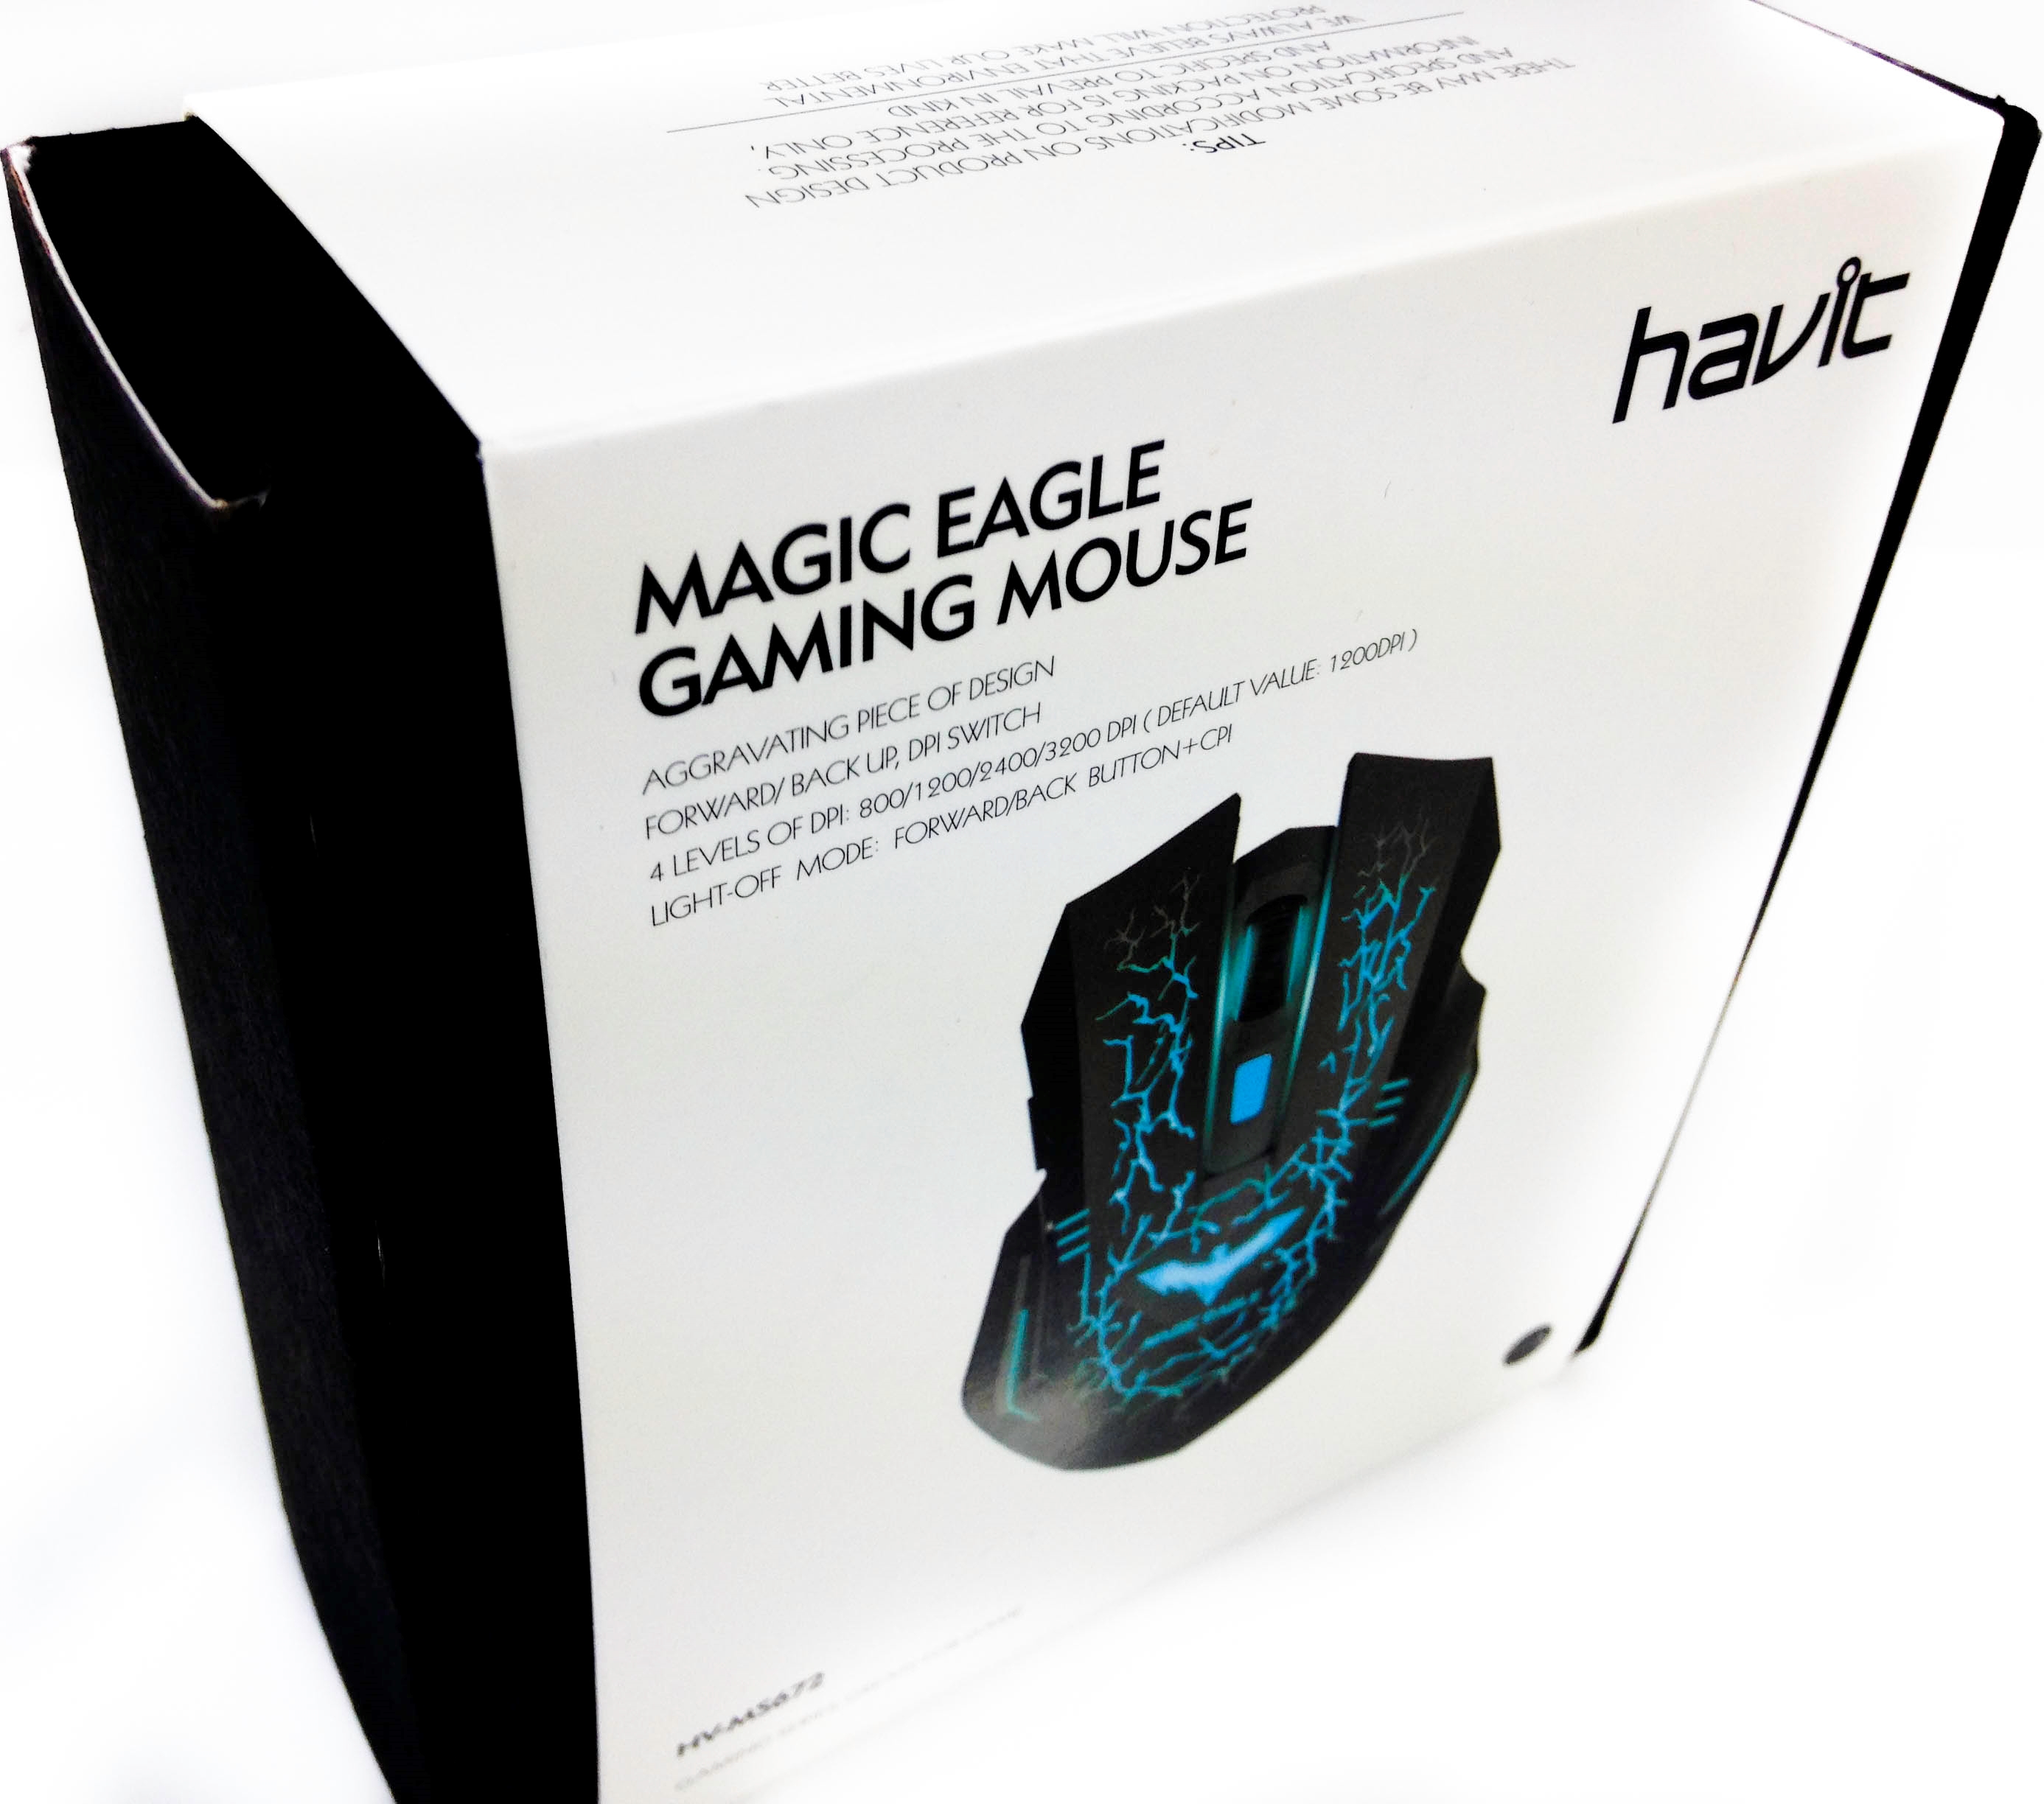 magic eagle mouse software havic